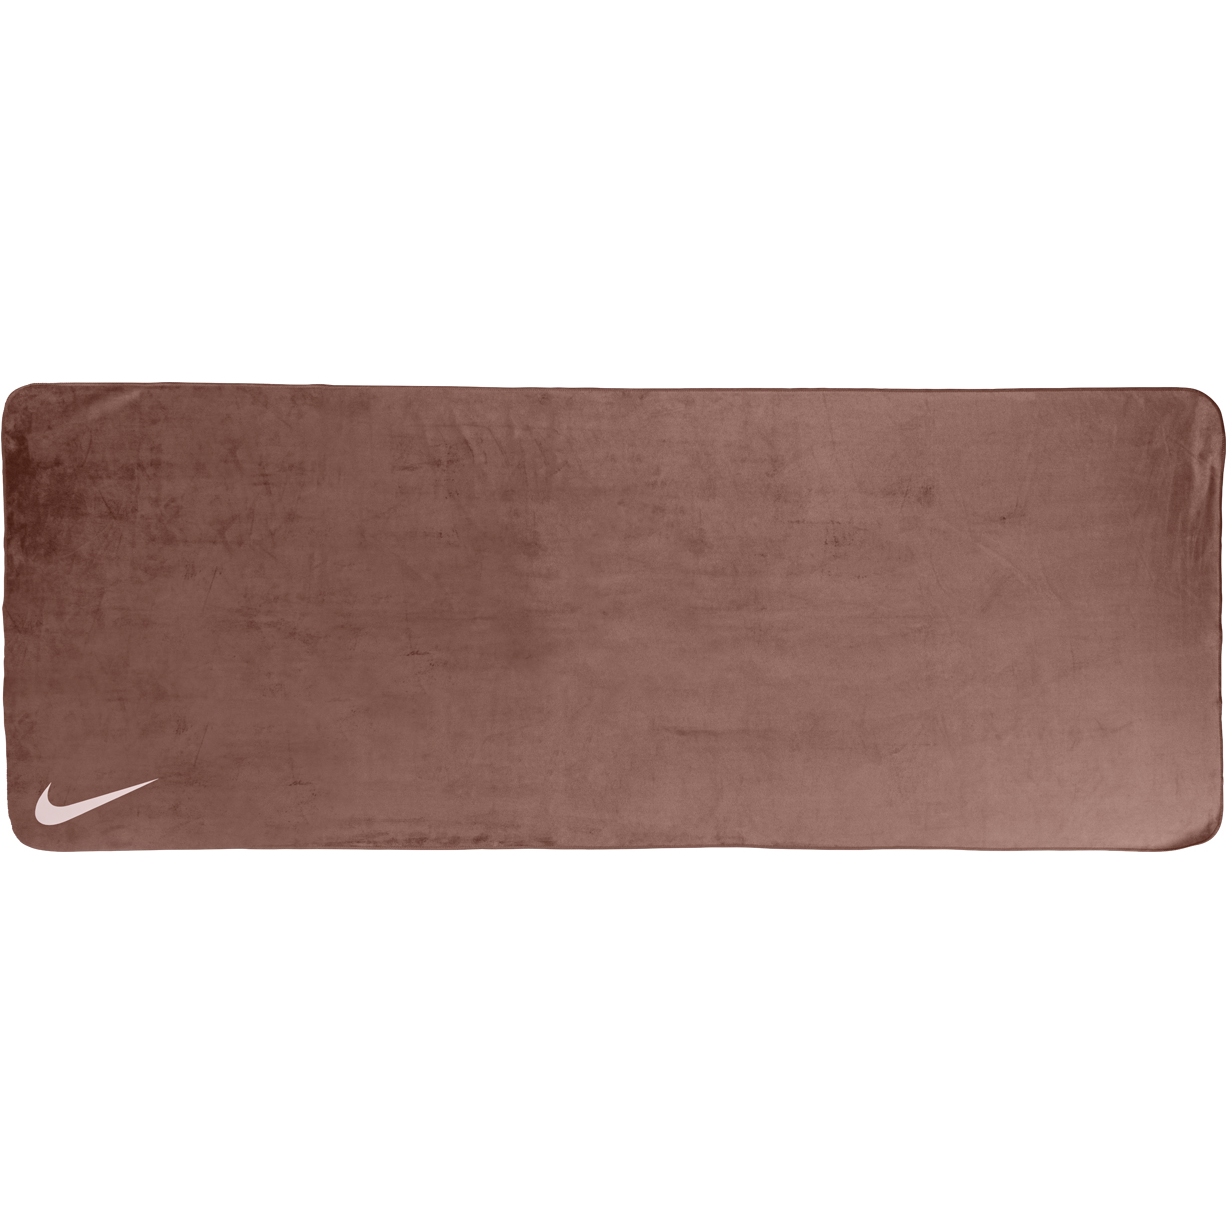 Produktbild von Nike Yoga-Handtuch - smokey mauve/platinum violet 201